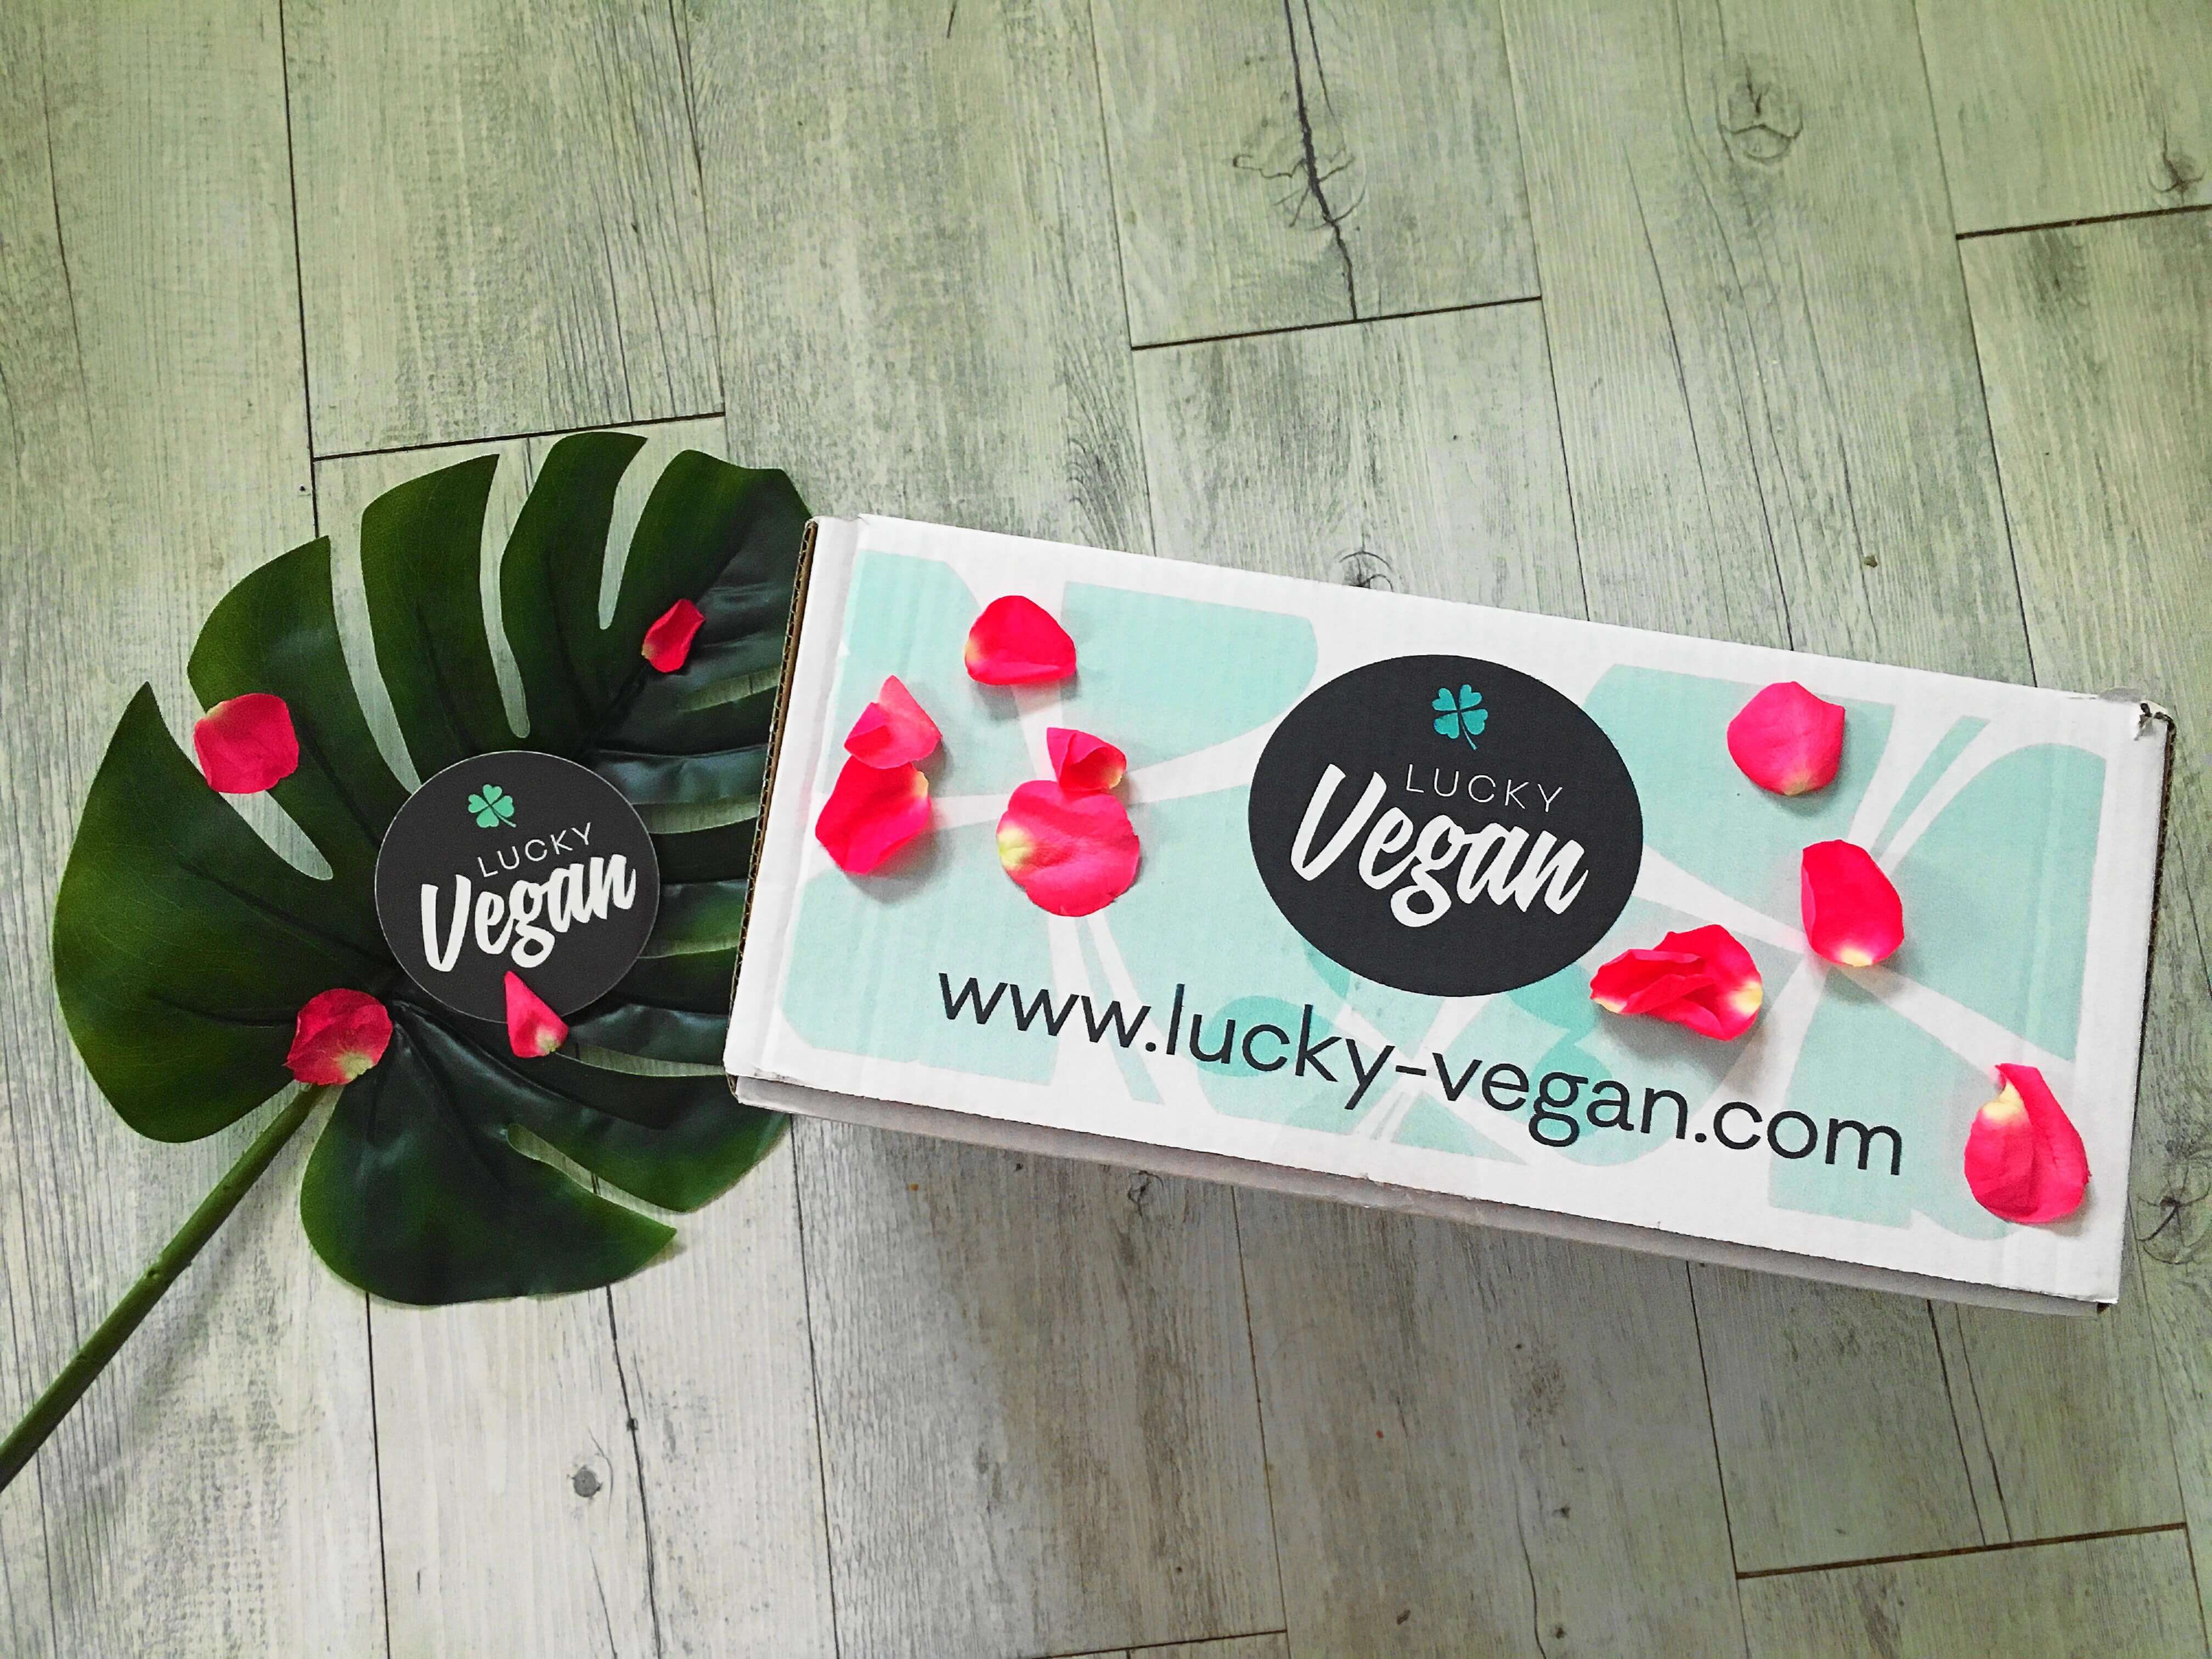 Heute stelle ich euch auf meinem Blog die vegane Lucky Vegan Box näher vor und zeige in einem Unboxing den super Inhalt der Februar 2018 Überraschungsbox 